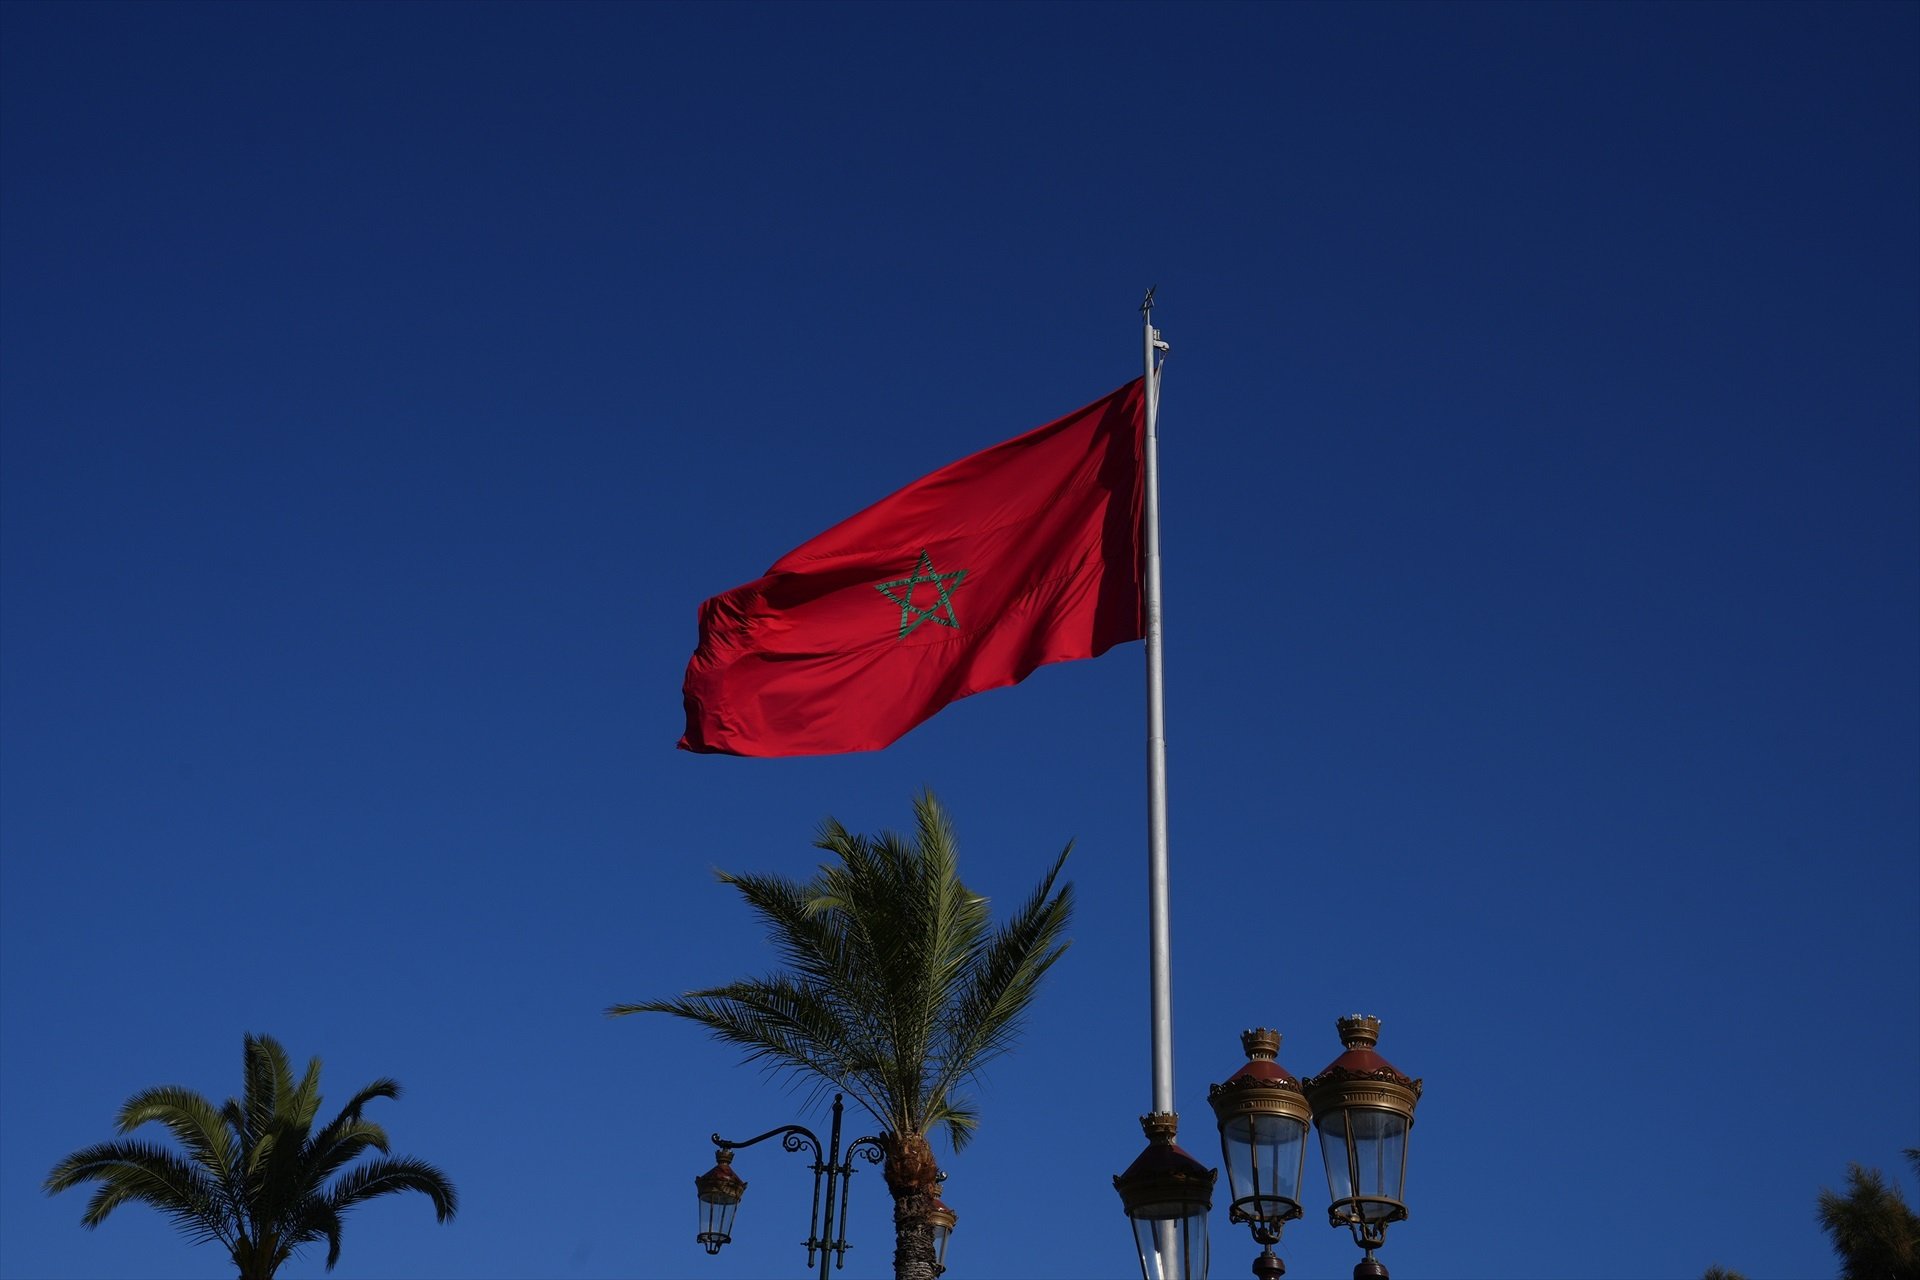 El presidente del Senado marroquí llama a recuperar las "ocupadas" Ceuta y Melilla